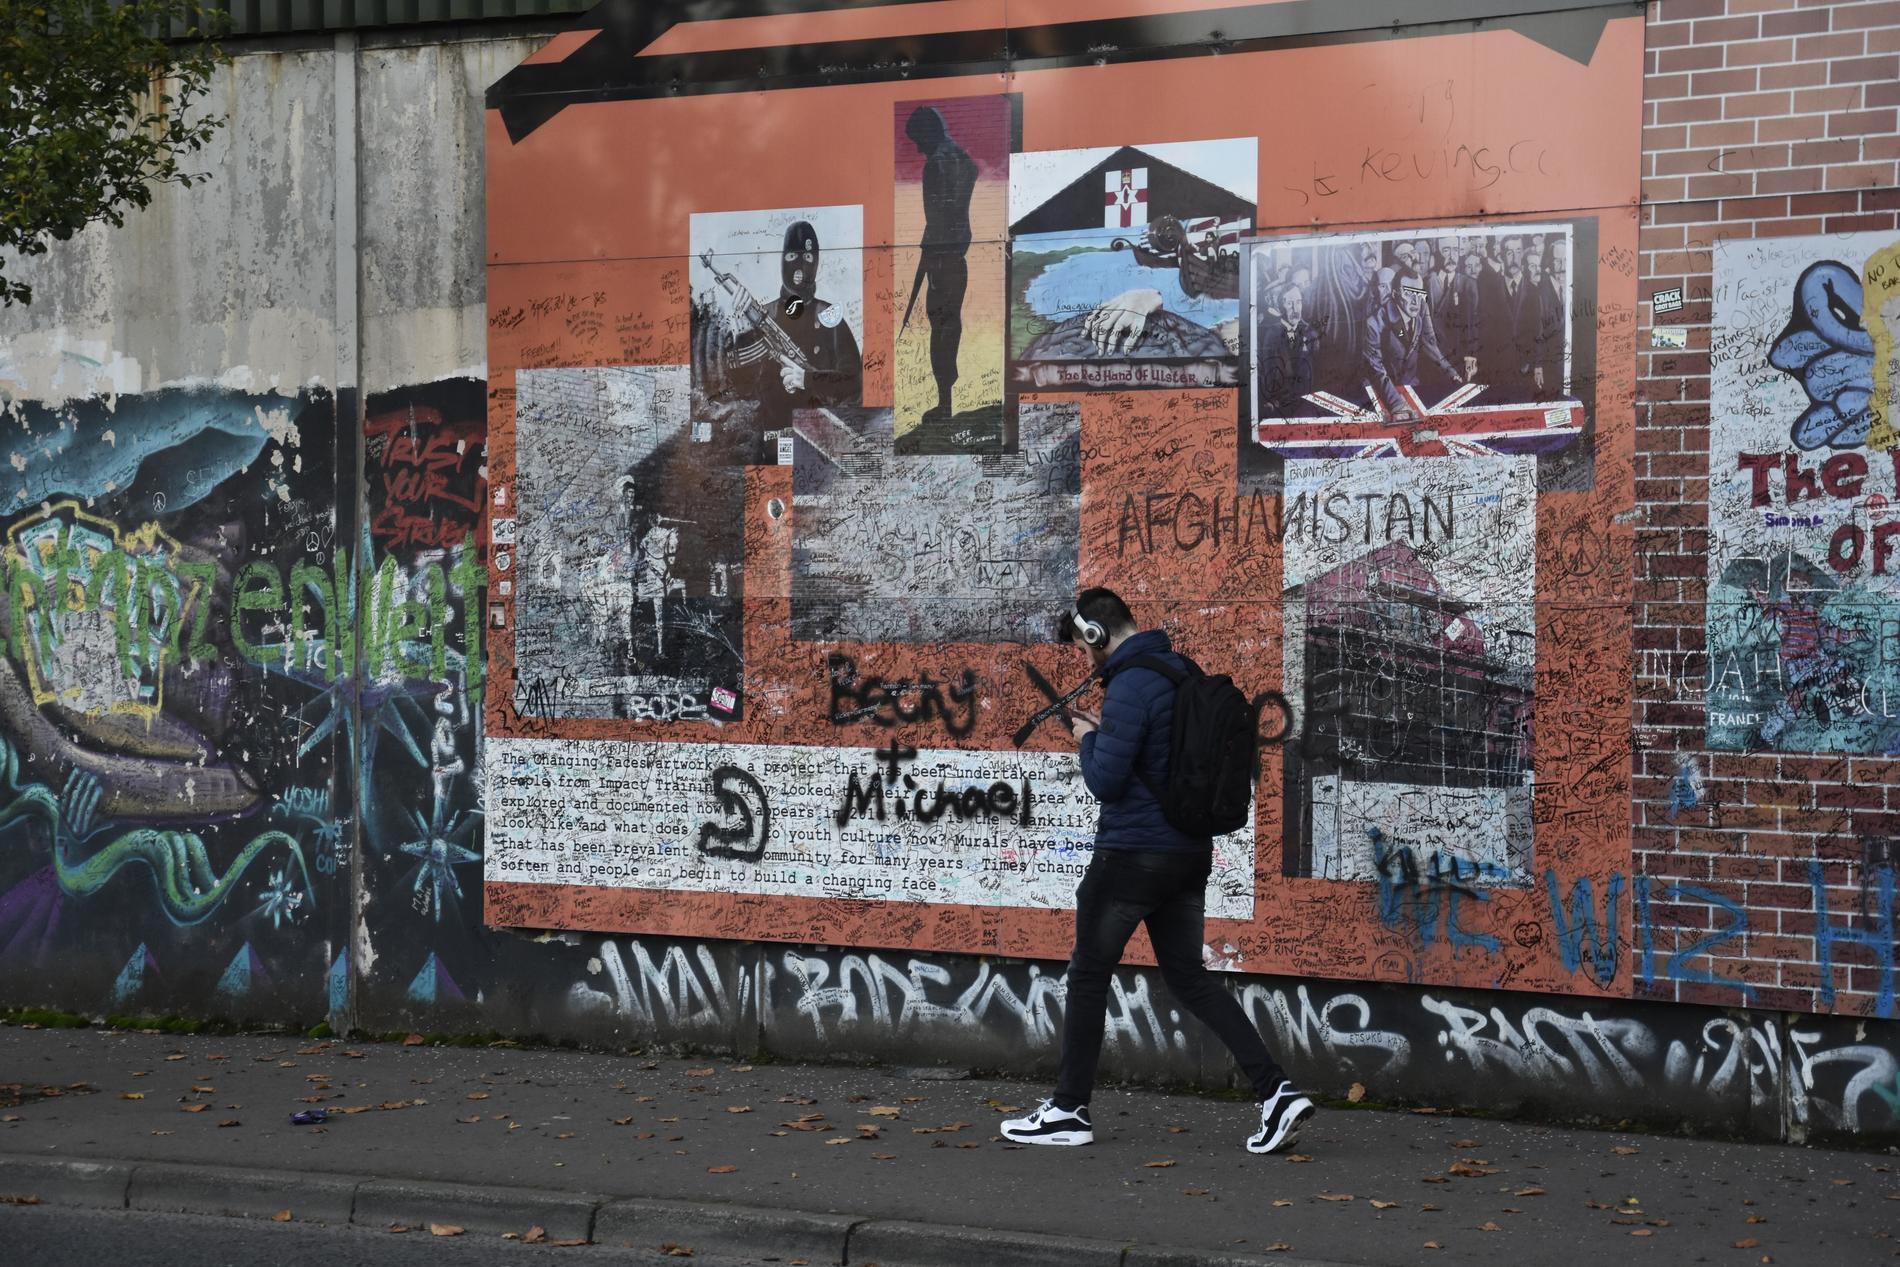 Belfast hyser fortfarande ett stort antal så kallade "fredsmurar", som åtskiljer katolska och protestantiska bostadskvarter. På murarna finns mängder av målningar som glorifierar den egna sidans väpnade insatser under de värsta orosåren på 1970- och 80-talen. Arkivbild.